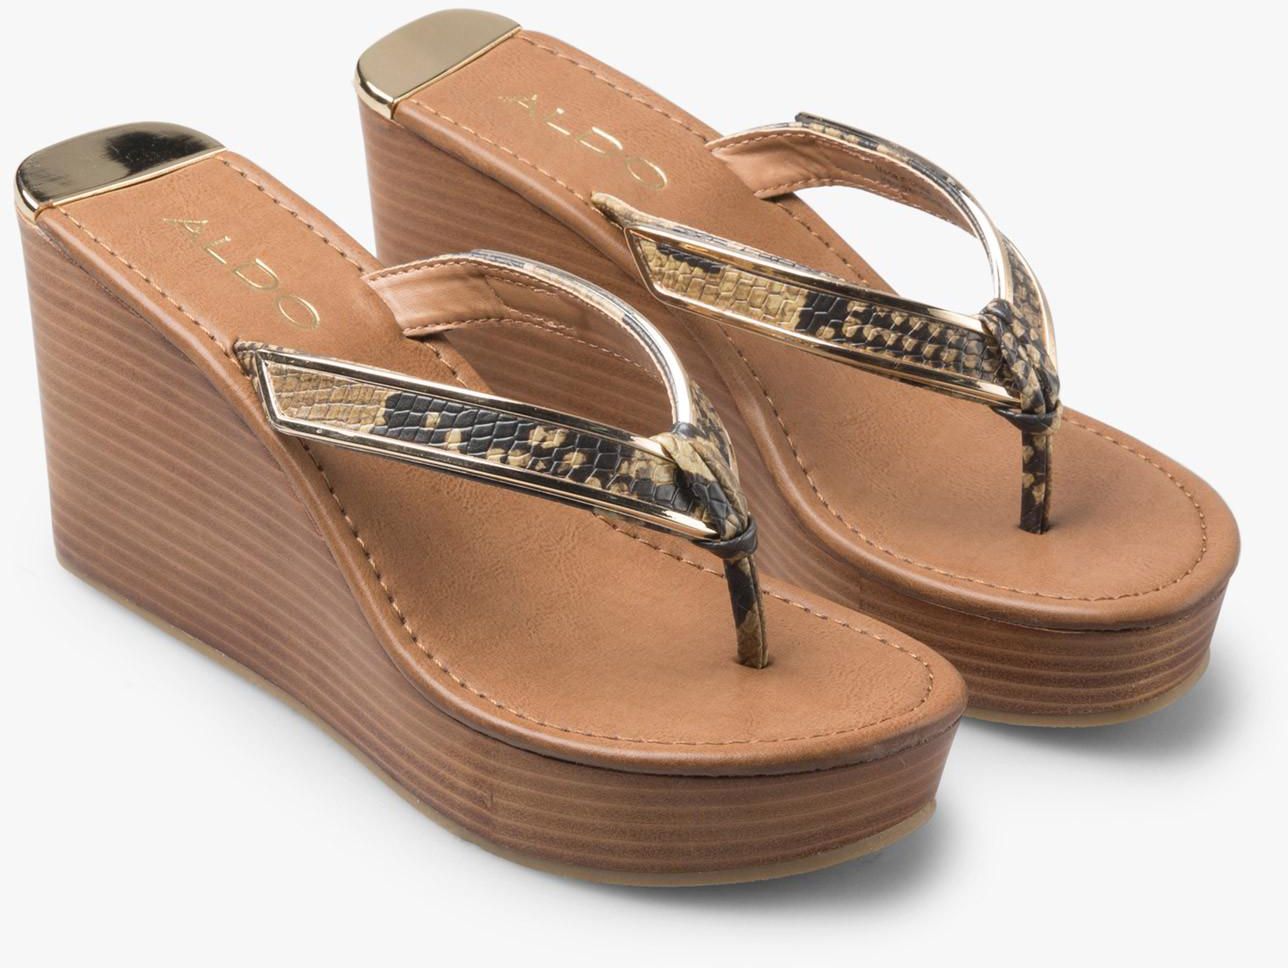 Jeroasien Wedge Sandals